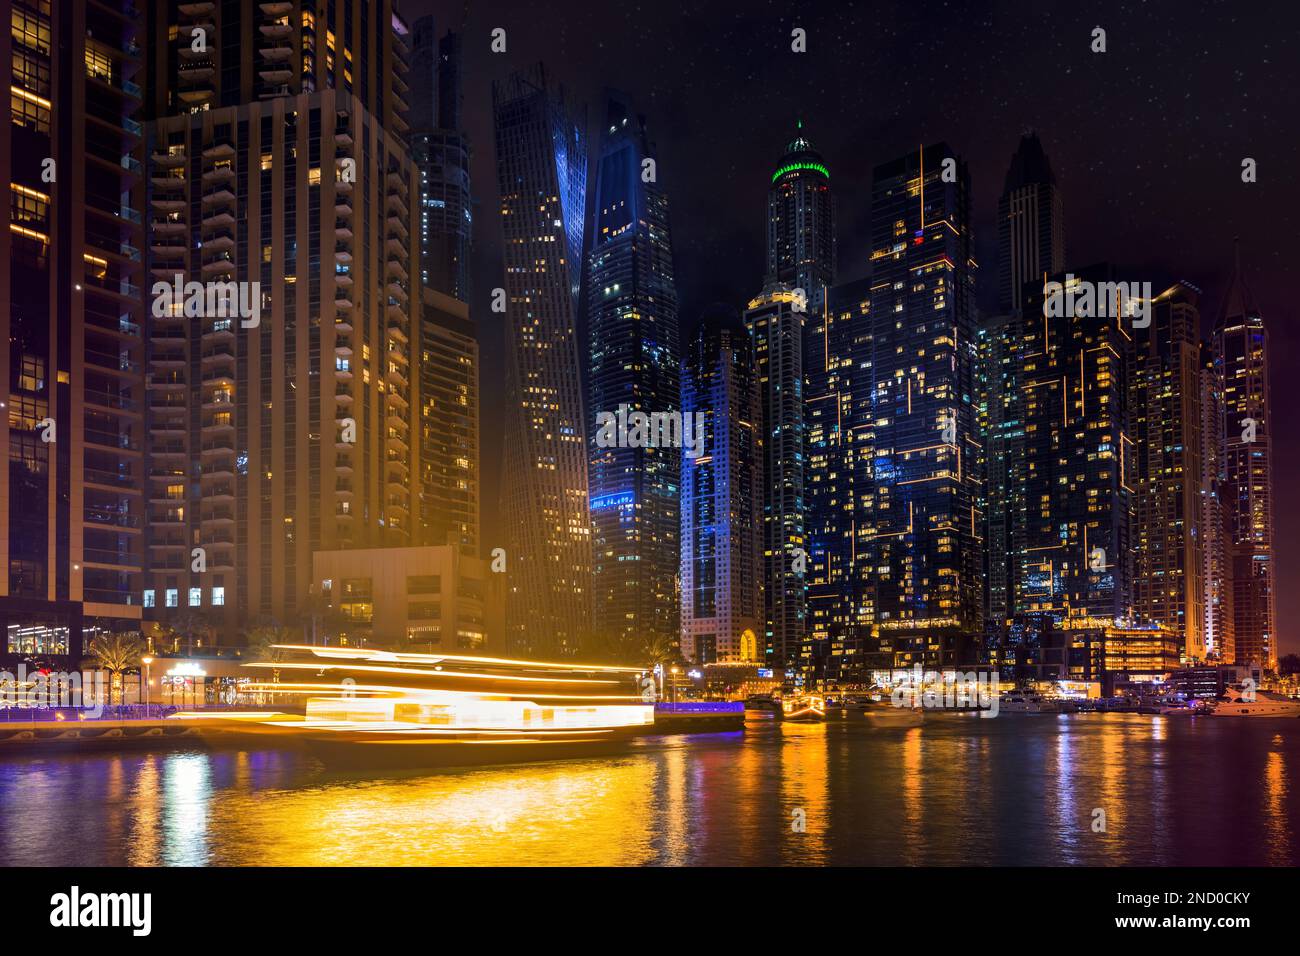 Dubai Marina por la noche, rascacielos iluminados y barcos del canal. EMIRATOS ÁRABES UNIDOS Foto de stock